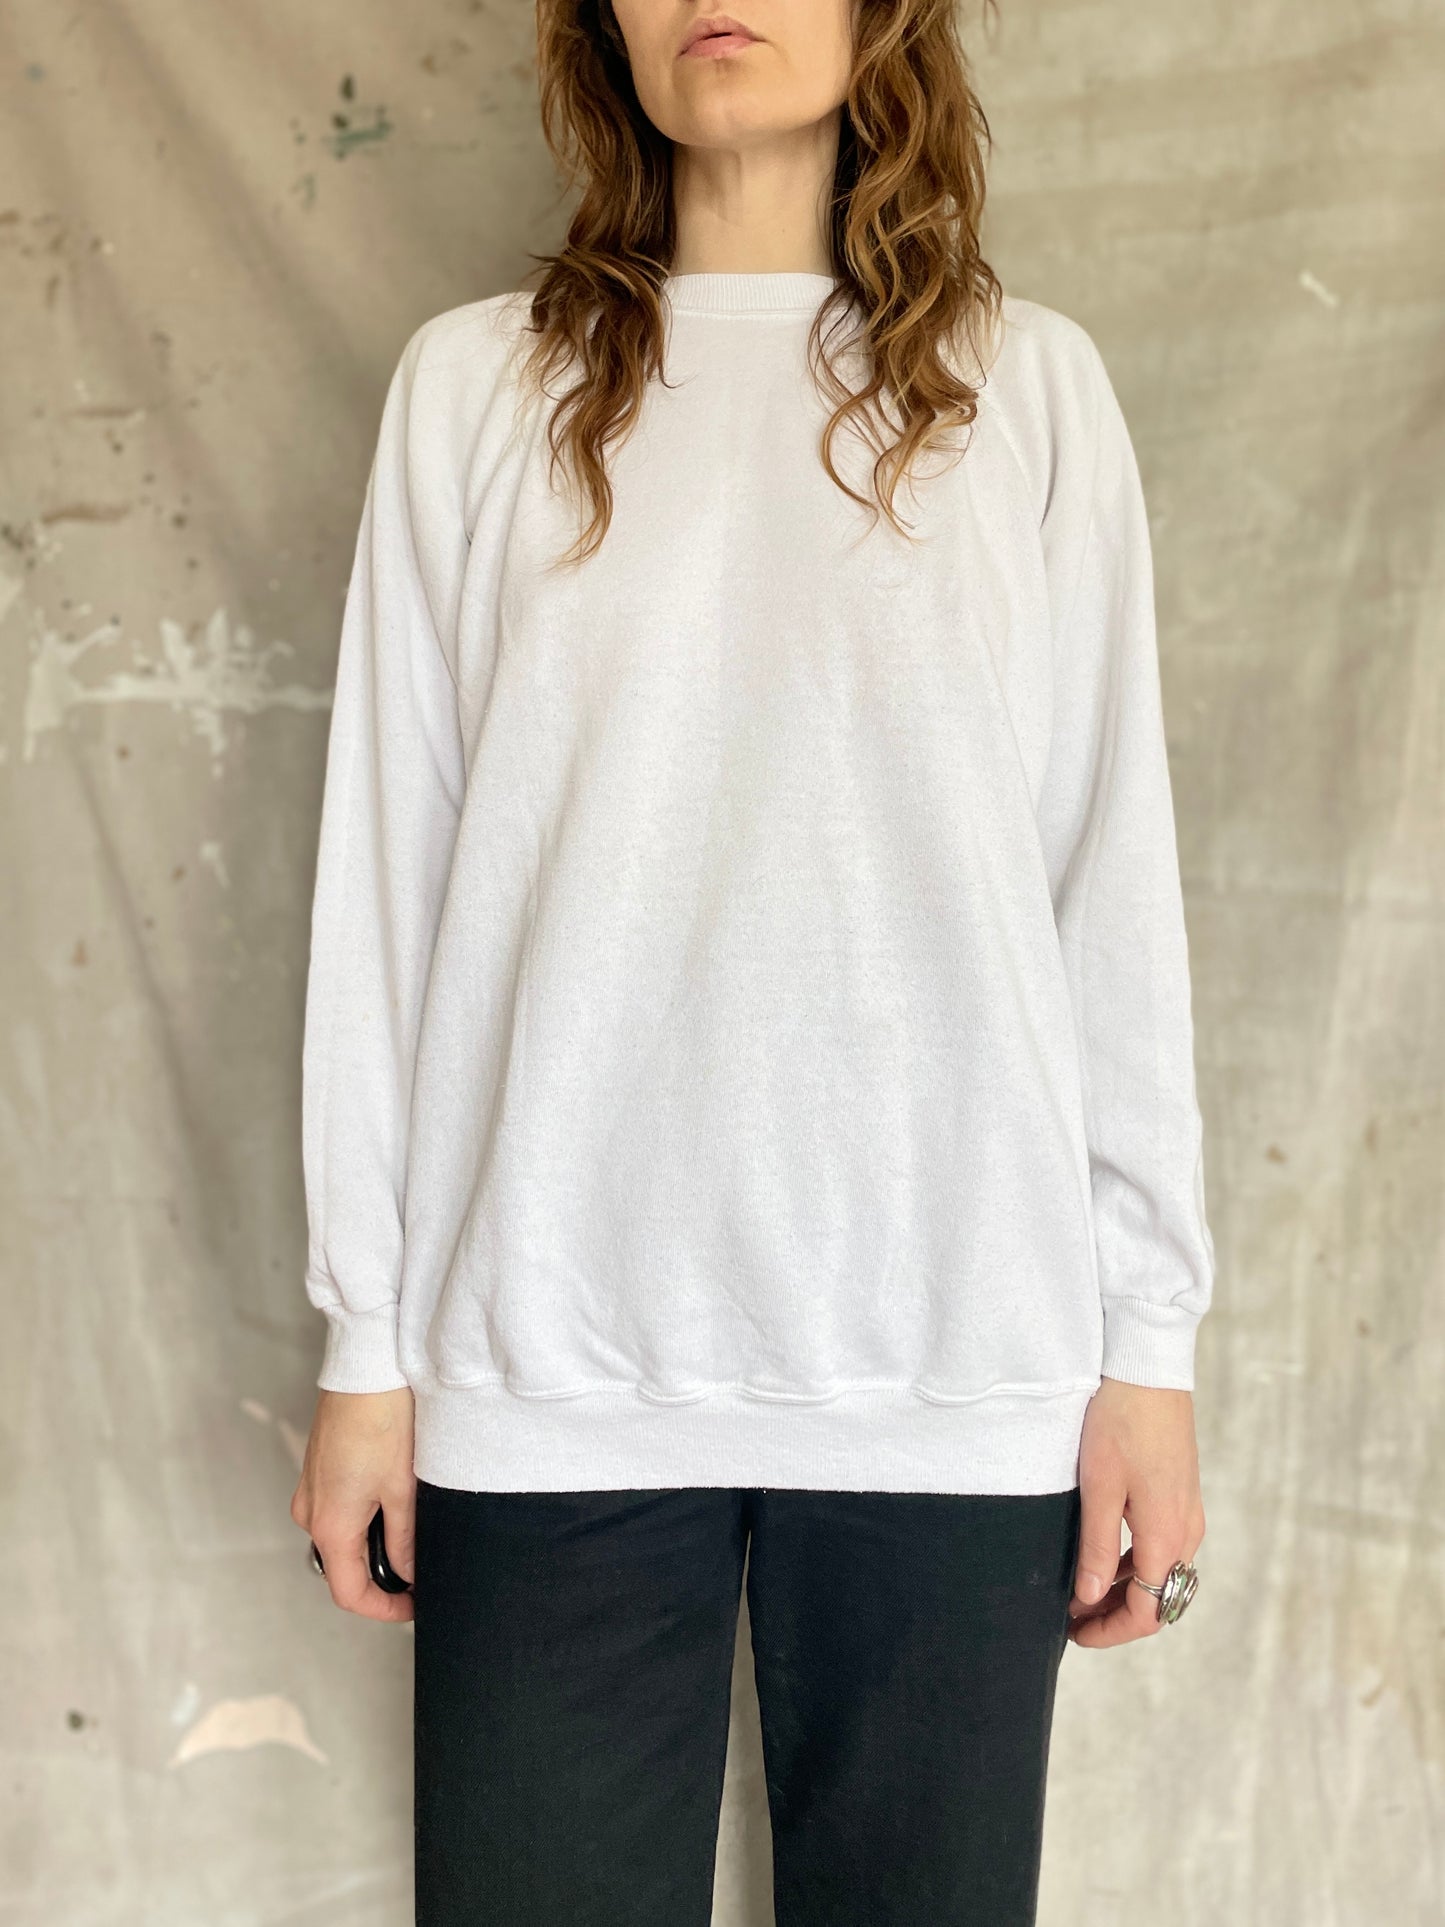 80s Blank White Sweatshirt